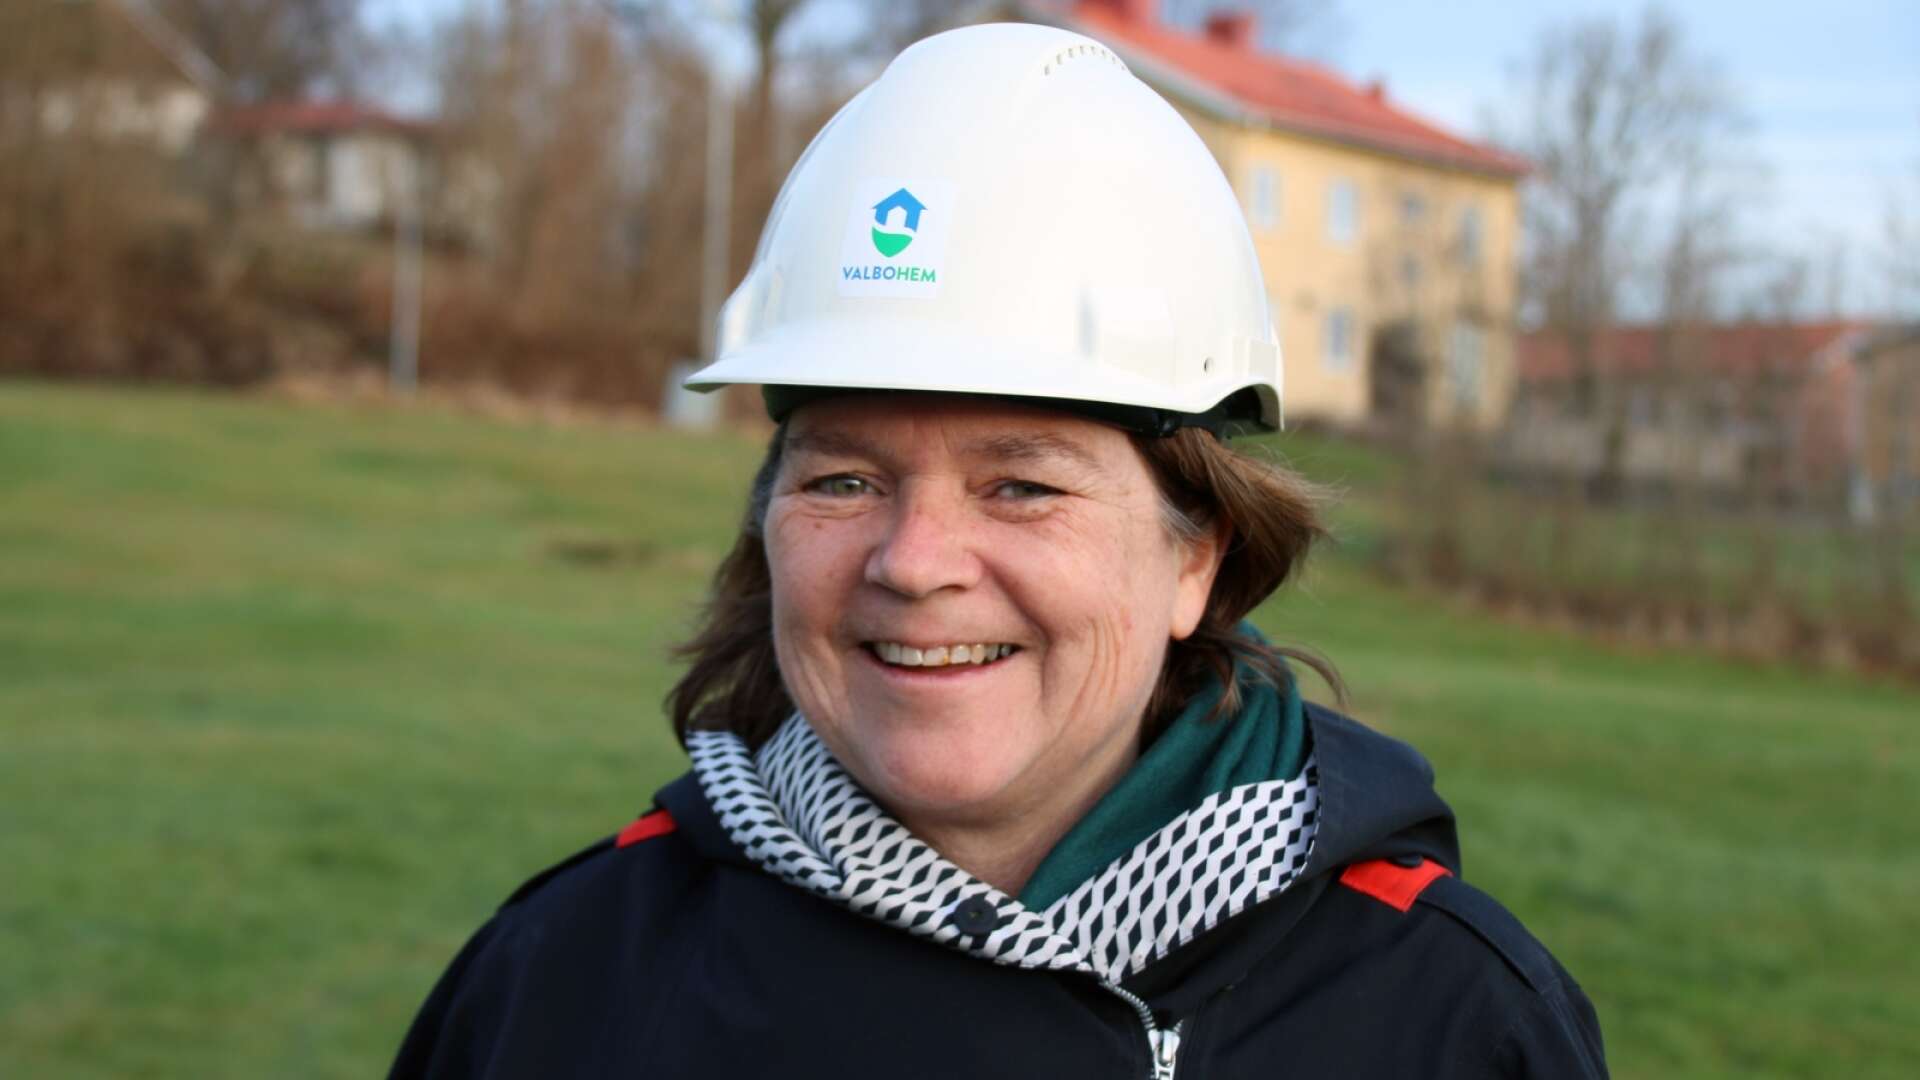 Kommunalrådet Ann Blomberg, tidigare ordförande i Valbohem, har bra koll på kommunens bostadsbestånd inför en kommande flyktingvåg.